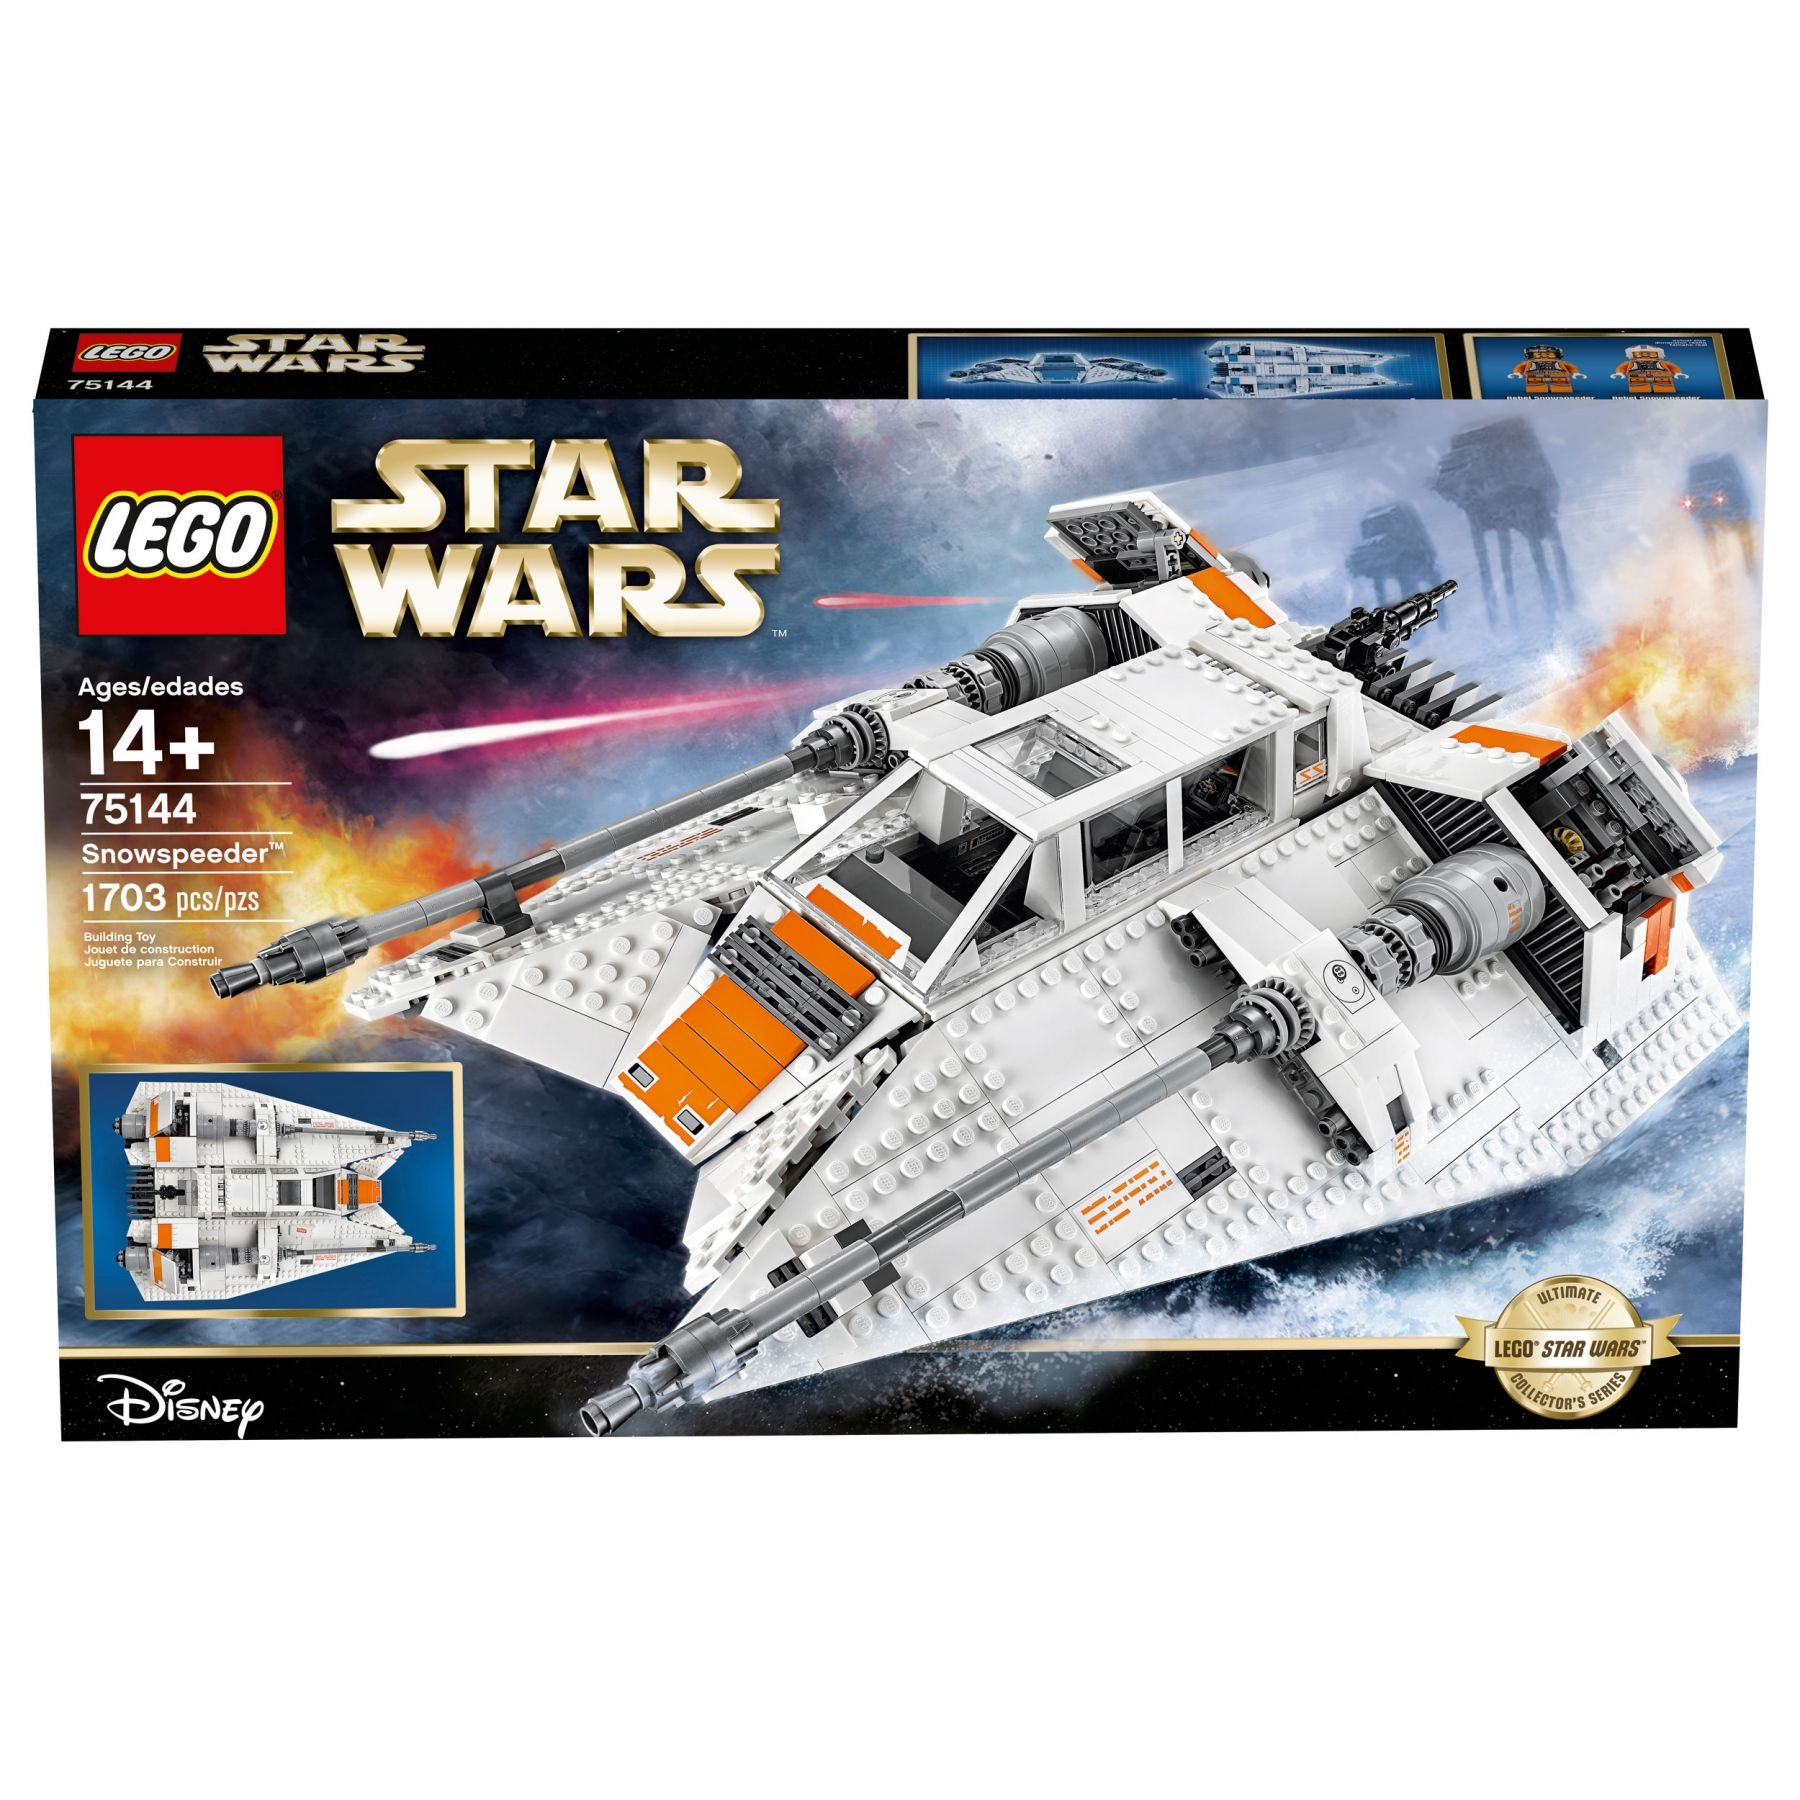 LEGO Star Wars 75144 Snowspeeder™ LEGO_Star_Wars_75144_Snowspeeder_UCS_Box2.jpg